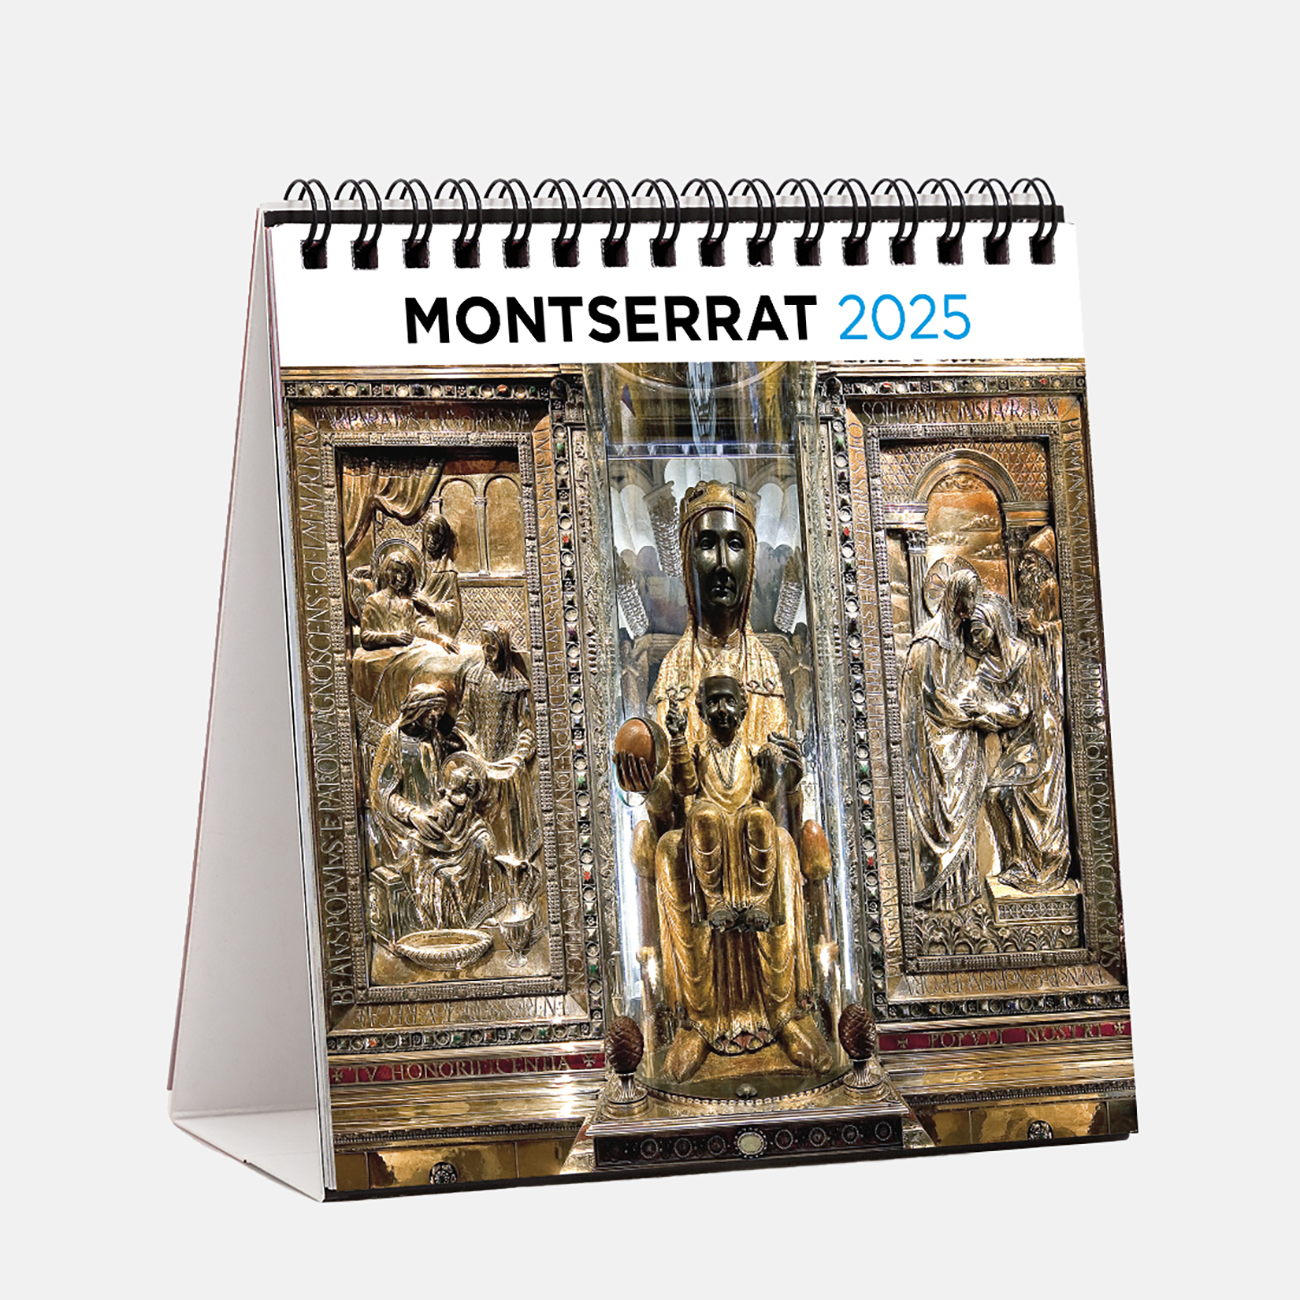 Calendario 2025 Montserrat s25m calendario sobremesa 2025 montserrat